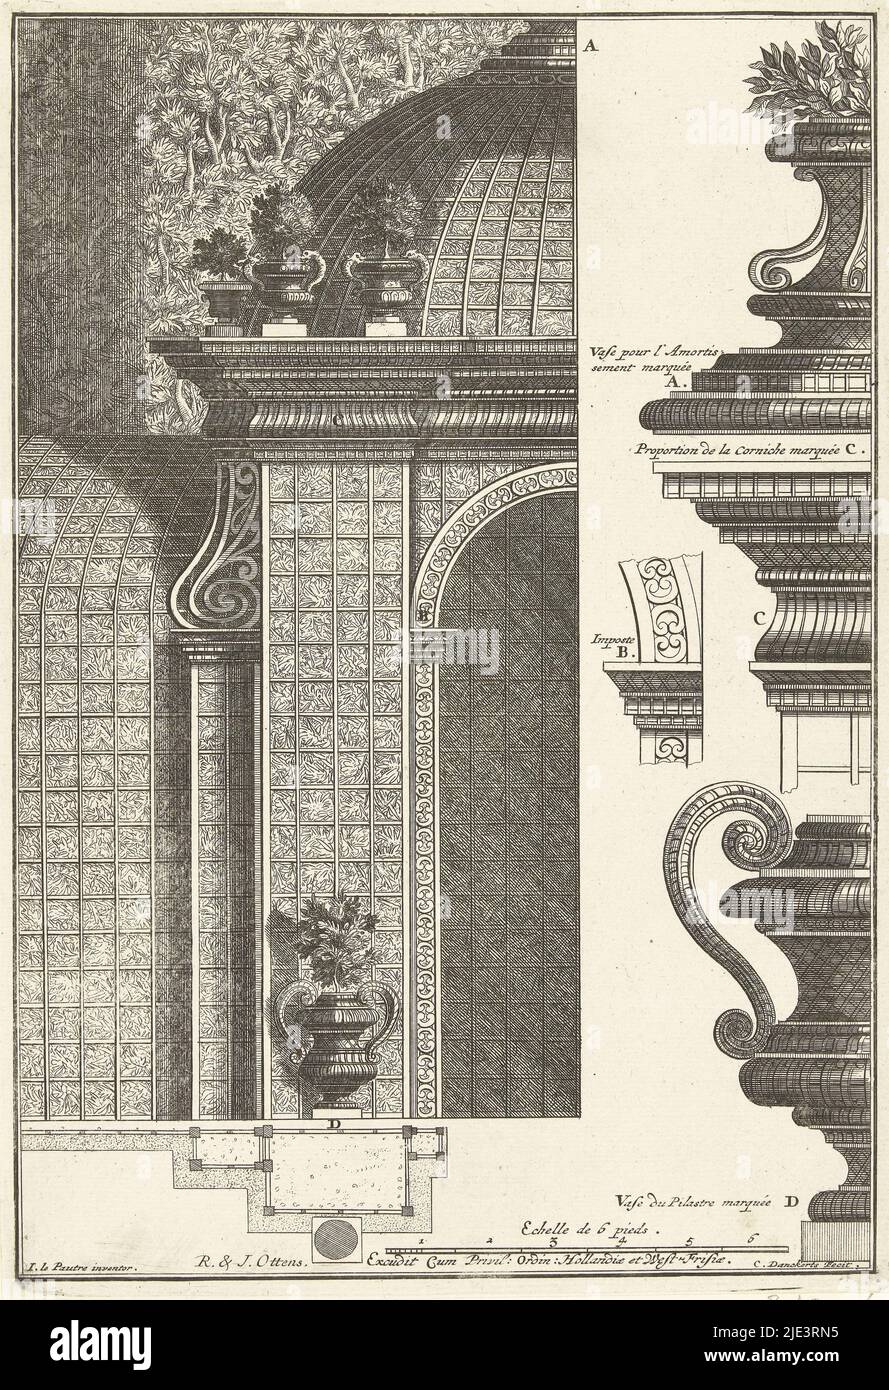 Con detalles del elemento de la corona, dos medias jarrones, una cornisa y un impost. A partir de una serie de 6 hojas, más tarde que la serie con pabellones de enrejado publicado por Justus Danckerts. Segunda impresión, medio pabellón de enrejados y detalles Pavilions Trellis (título de la serie), imprenta: Cornelis Danckerts (II), (mencionado en el objeto), Pierre Lepautre, (mencionado en el objeto), editor: Reinier Ottens (I), 1726 - 1750 y/o 1750 - 1765, papel, grabado, h 281 mm x 194 mm de ancho Foto de stock